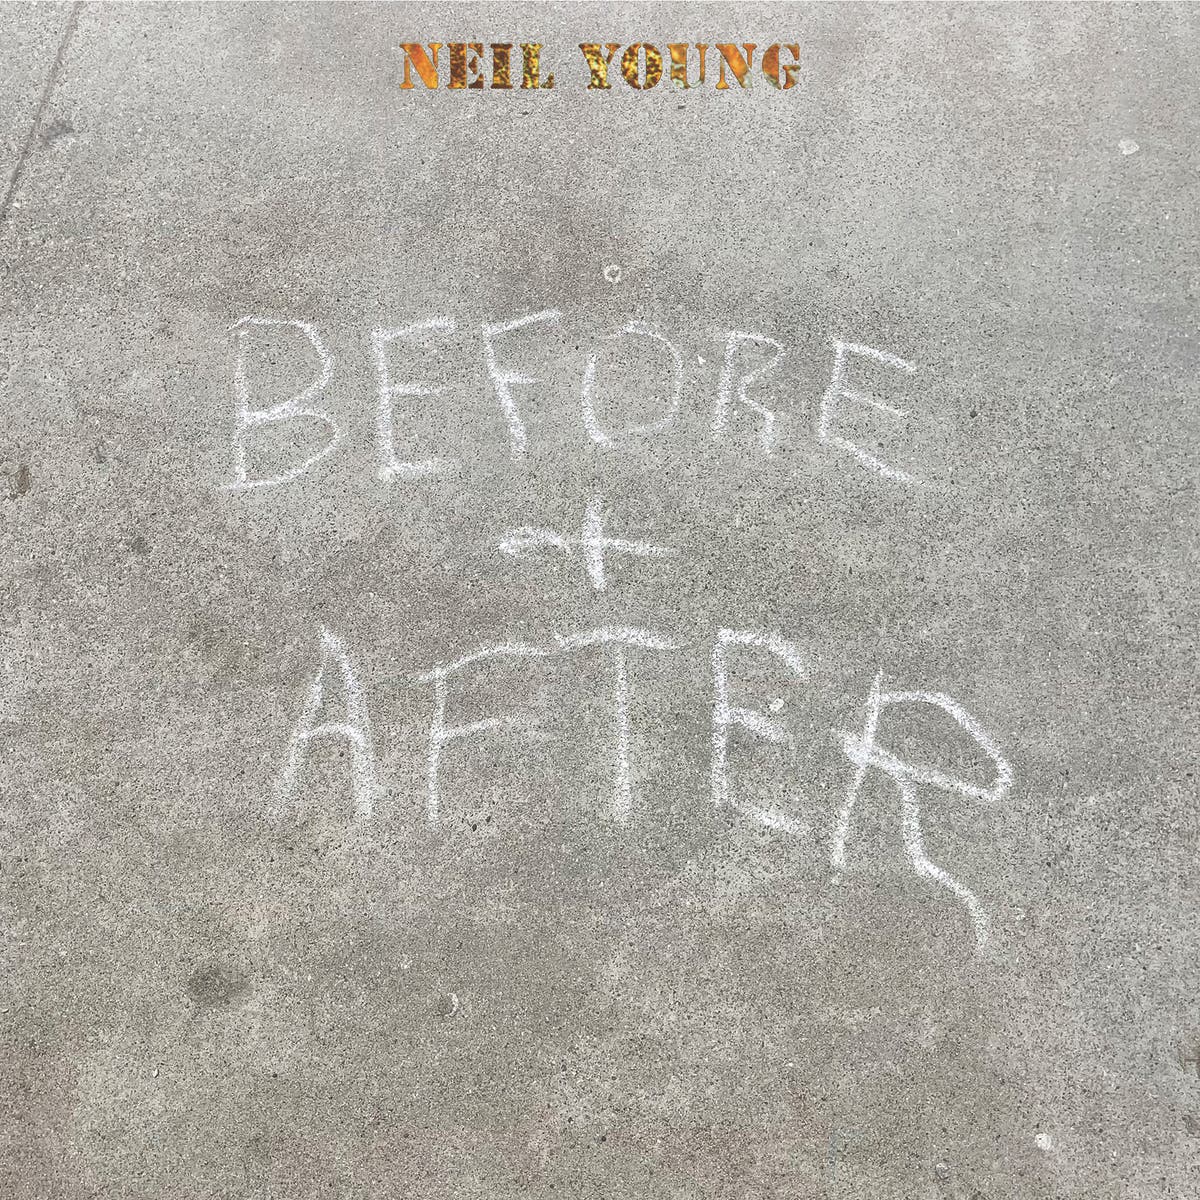 Музикален преглед: „Before and After“ на Нийл Йънг предлага един непрекъснат поток от рядкост